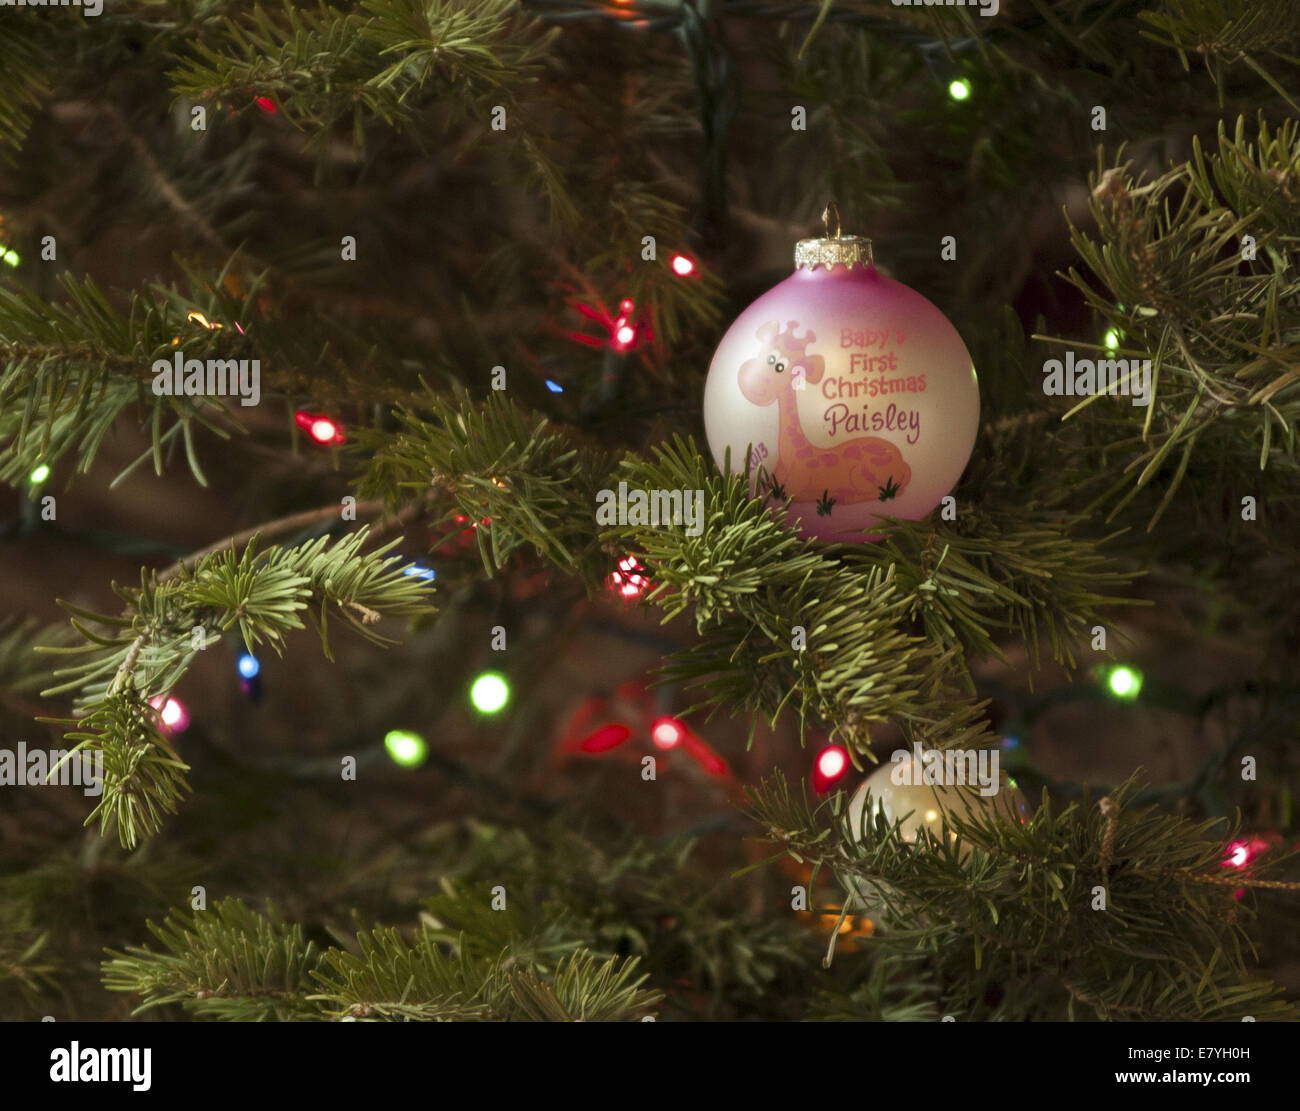 Babys erstes Weihnachten Ornament an einem Weihnachtsbaum hängen.  Es ist rosa und weiß mit einer kostbaren Momente Giraffe. Stockfoto